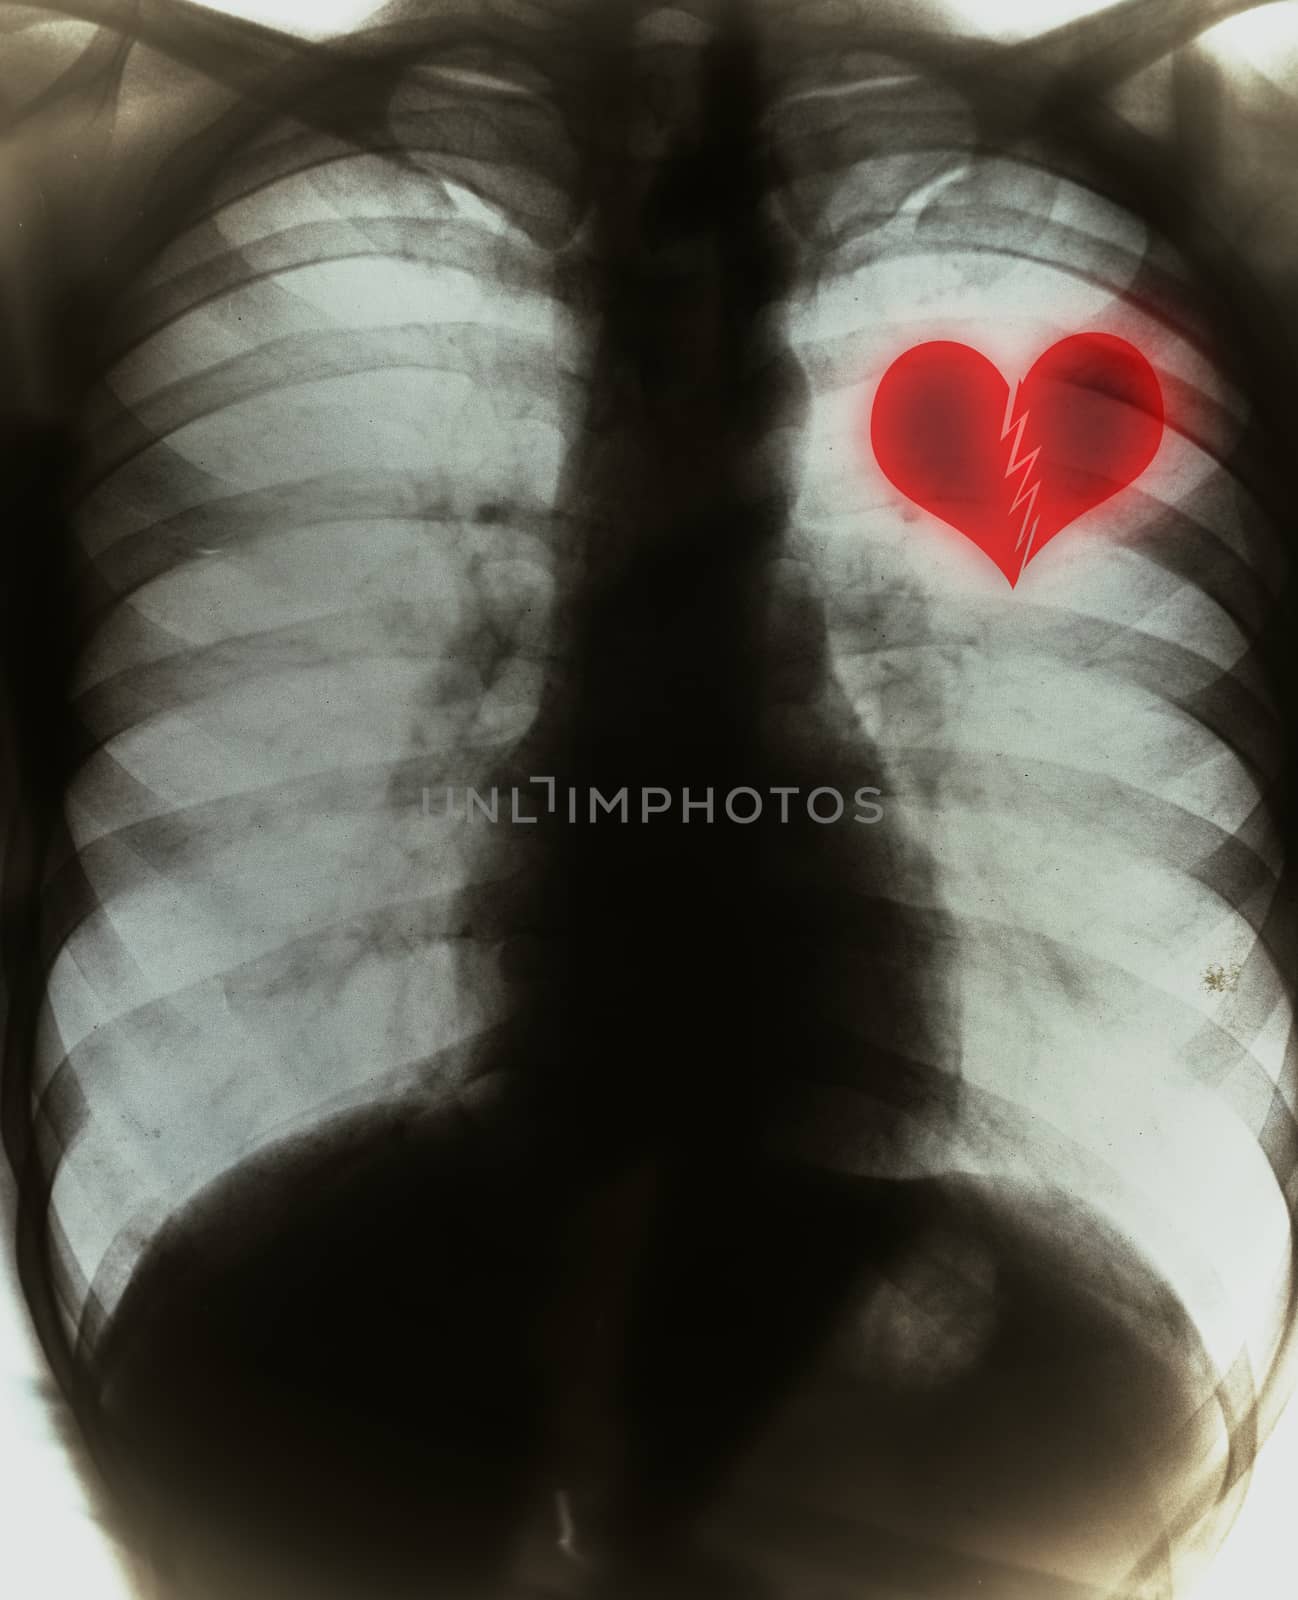 Broken heart on black x-ray film